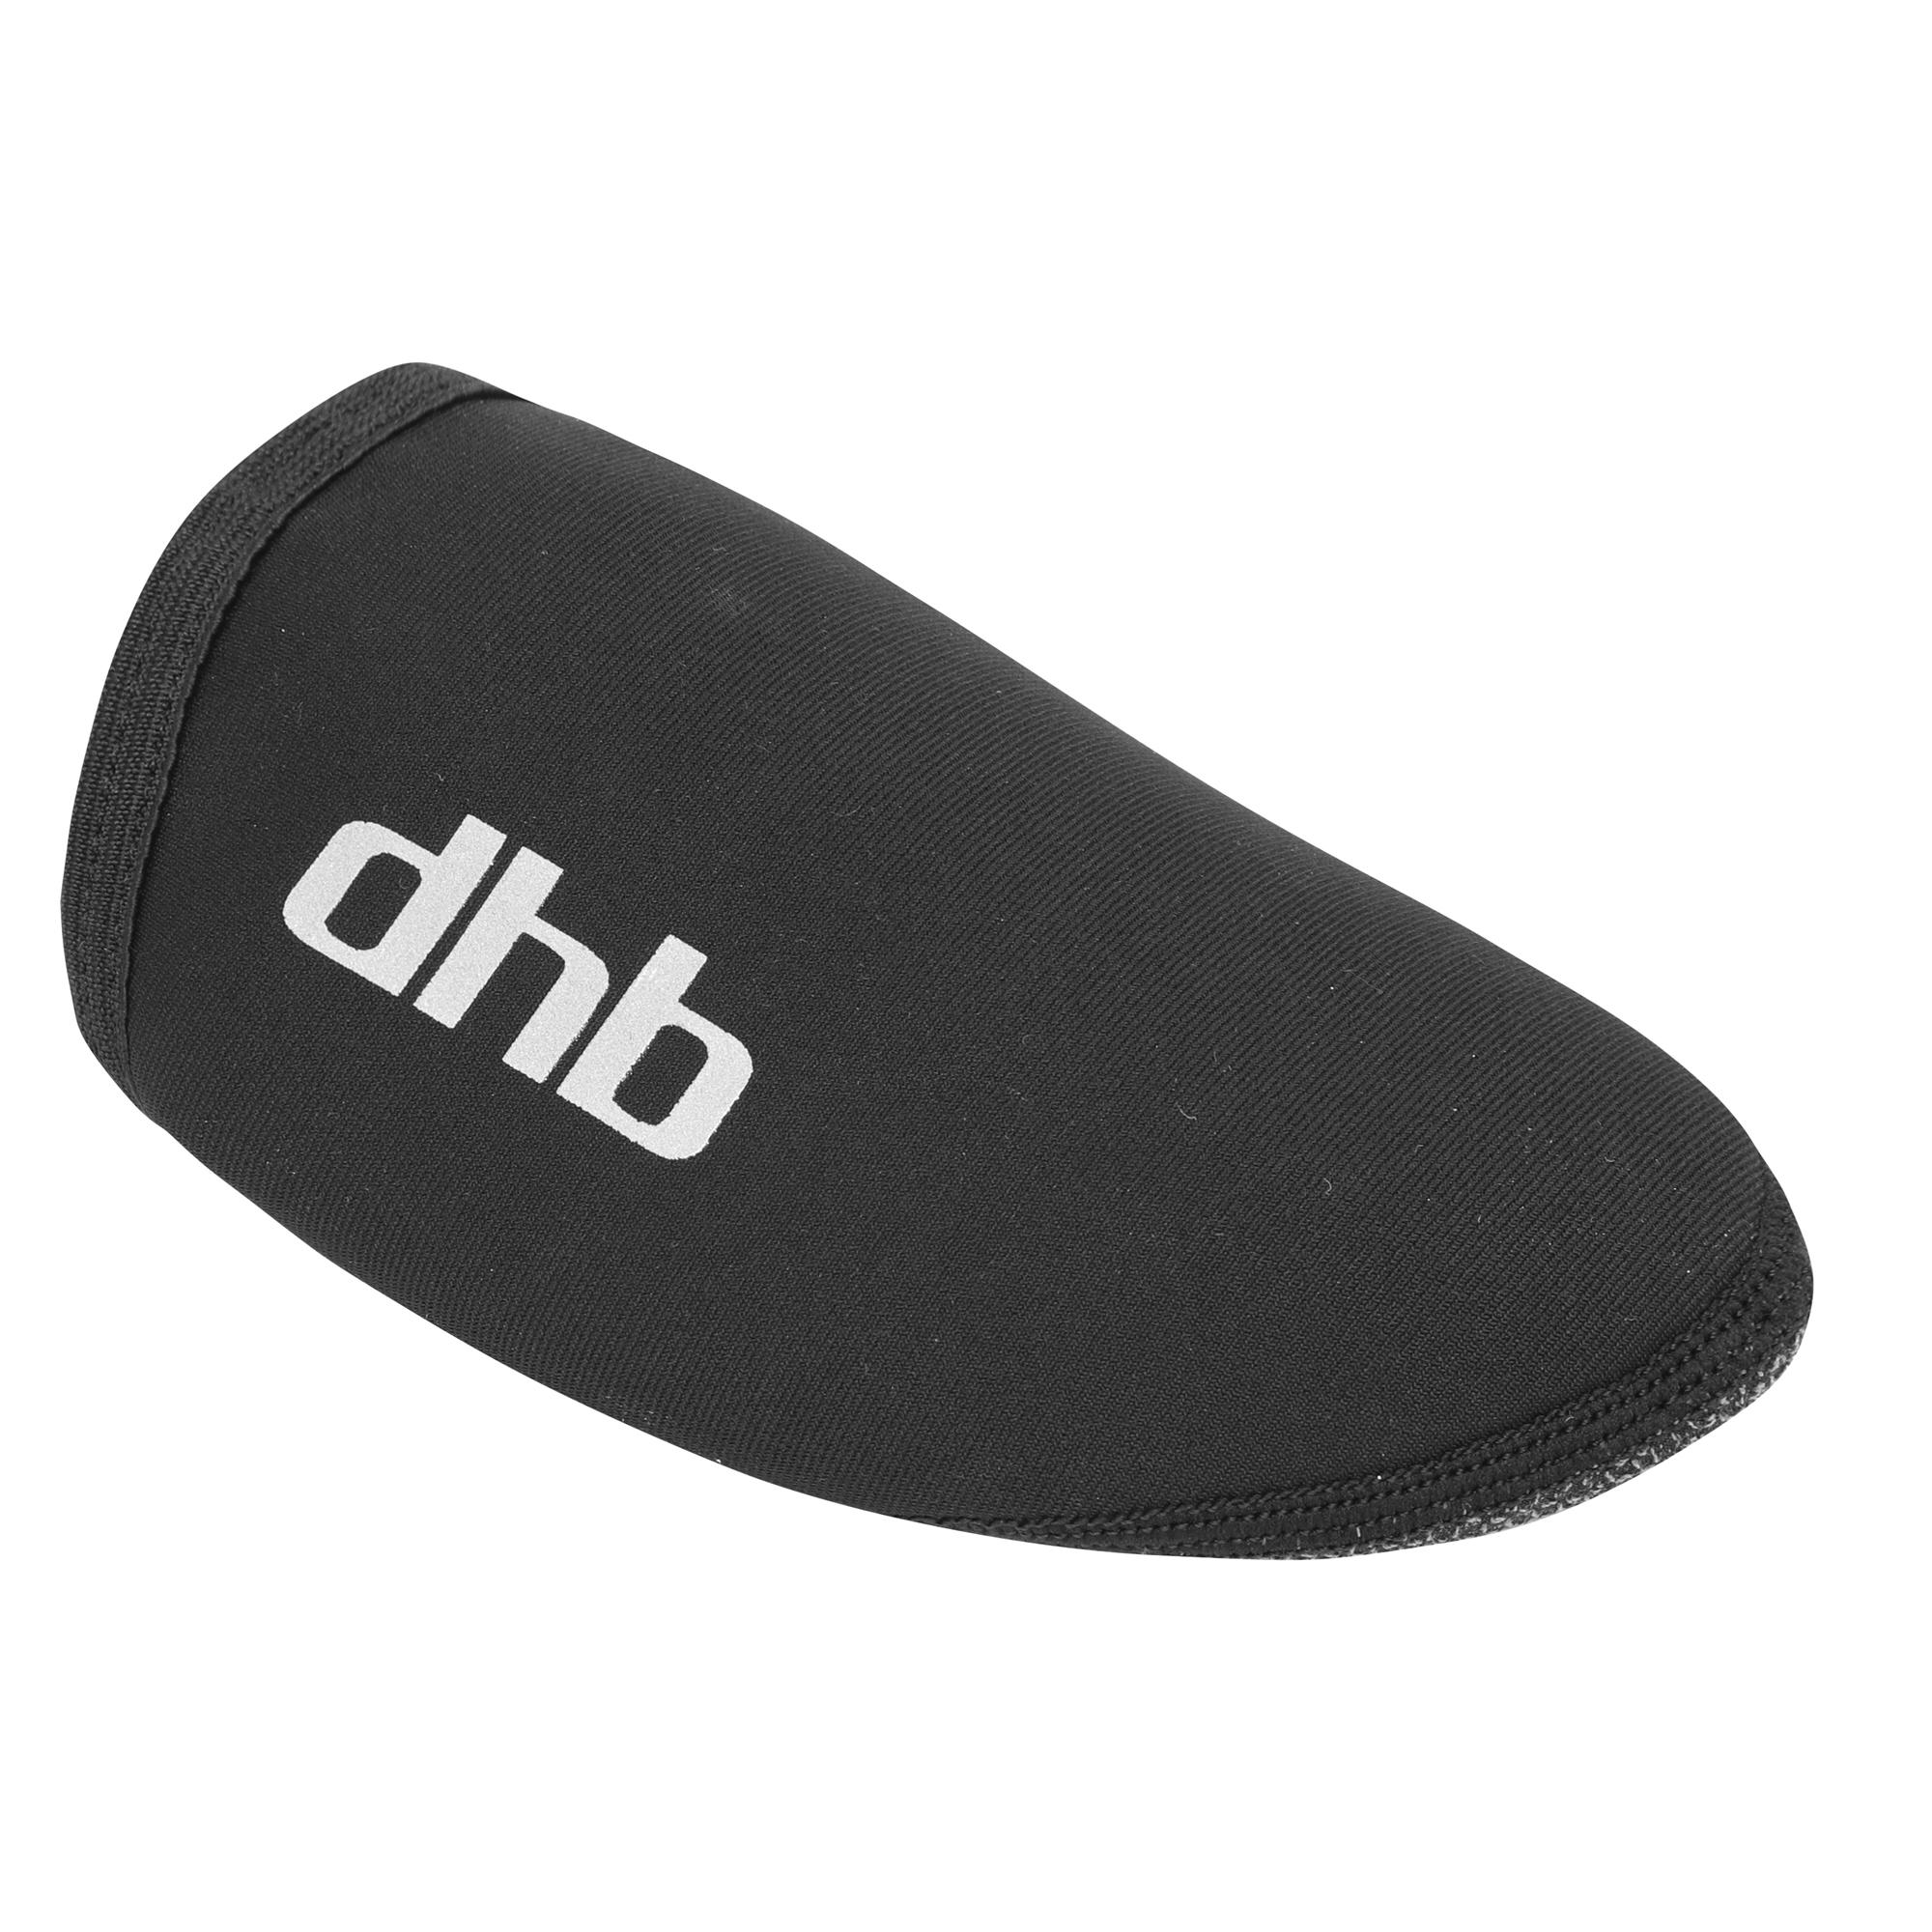 Dhb Toe Cover Overshoe  Black